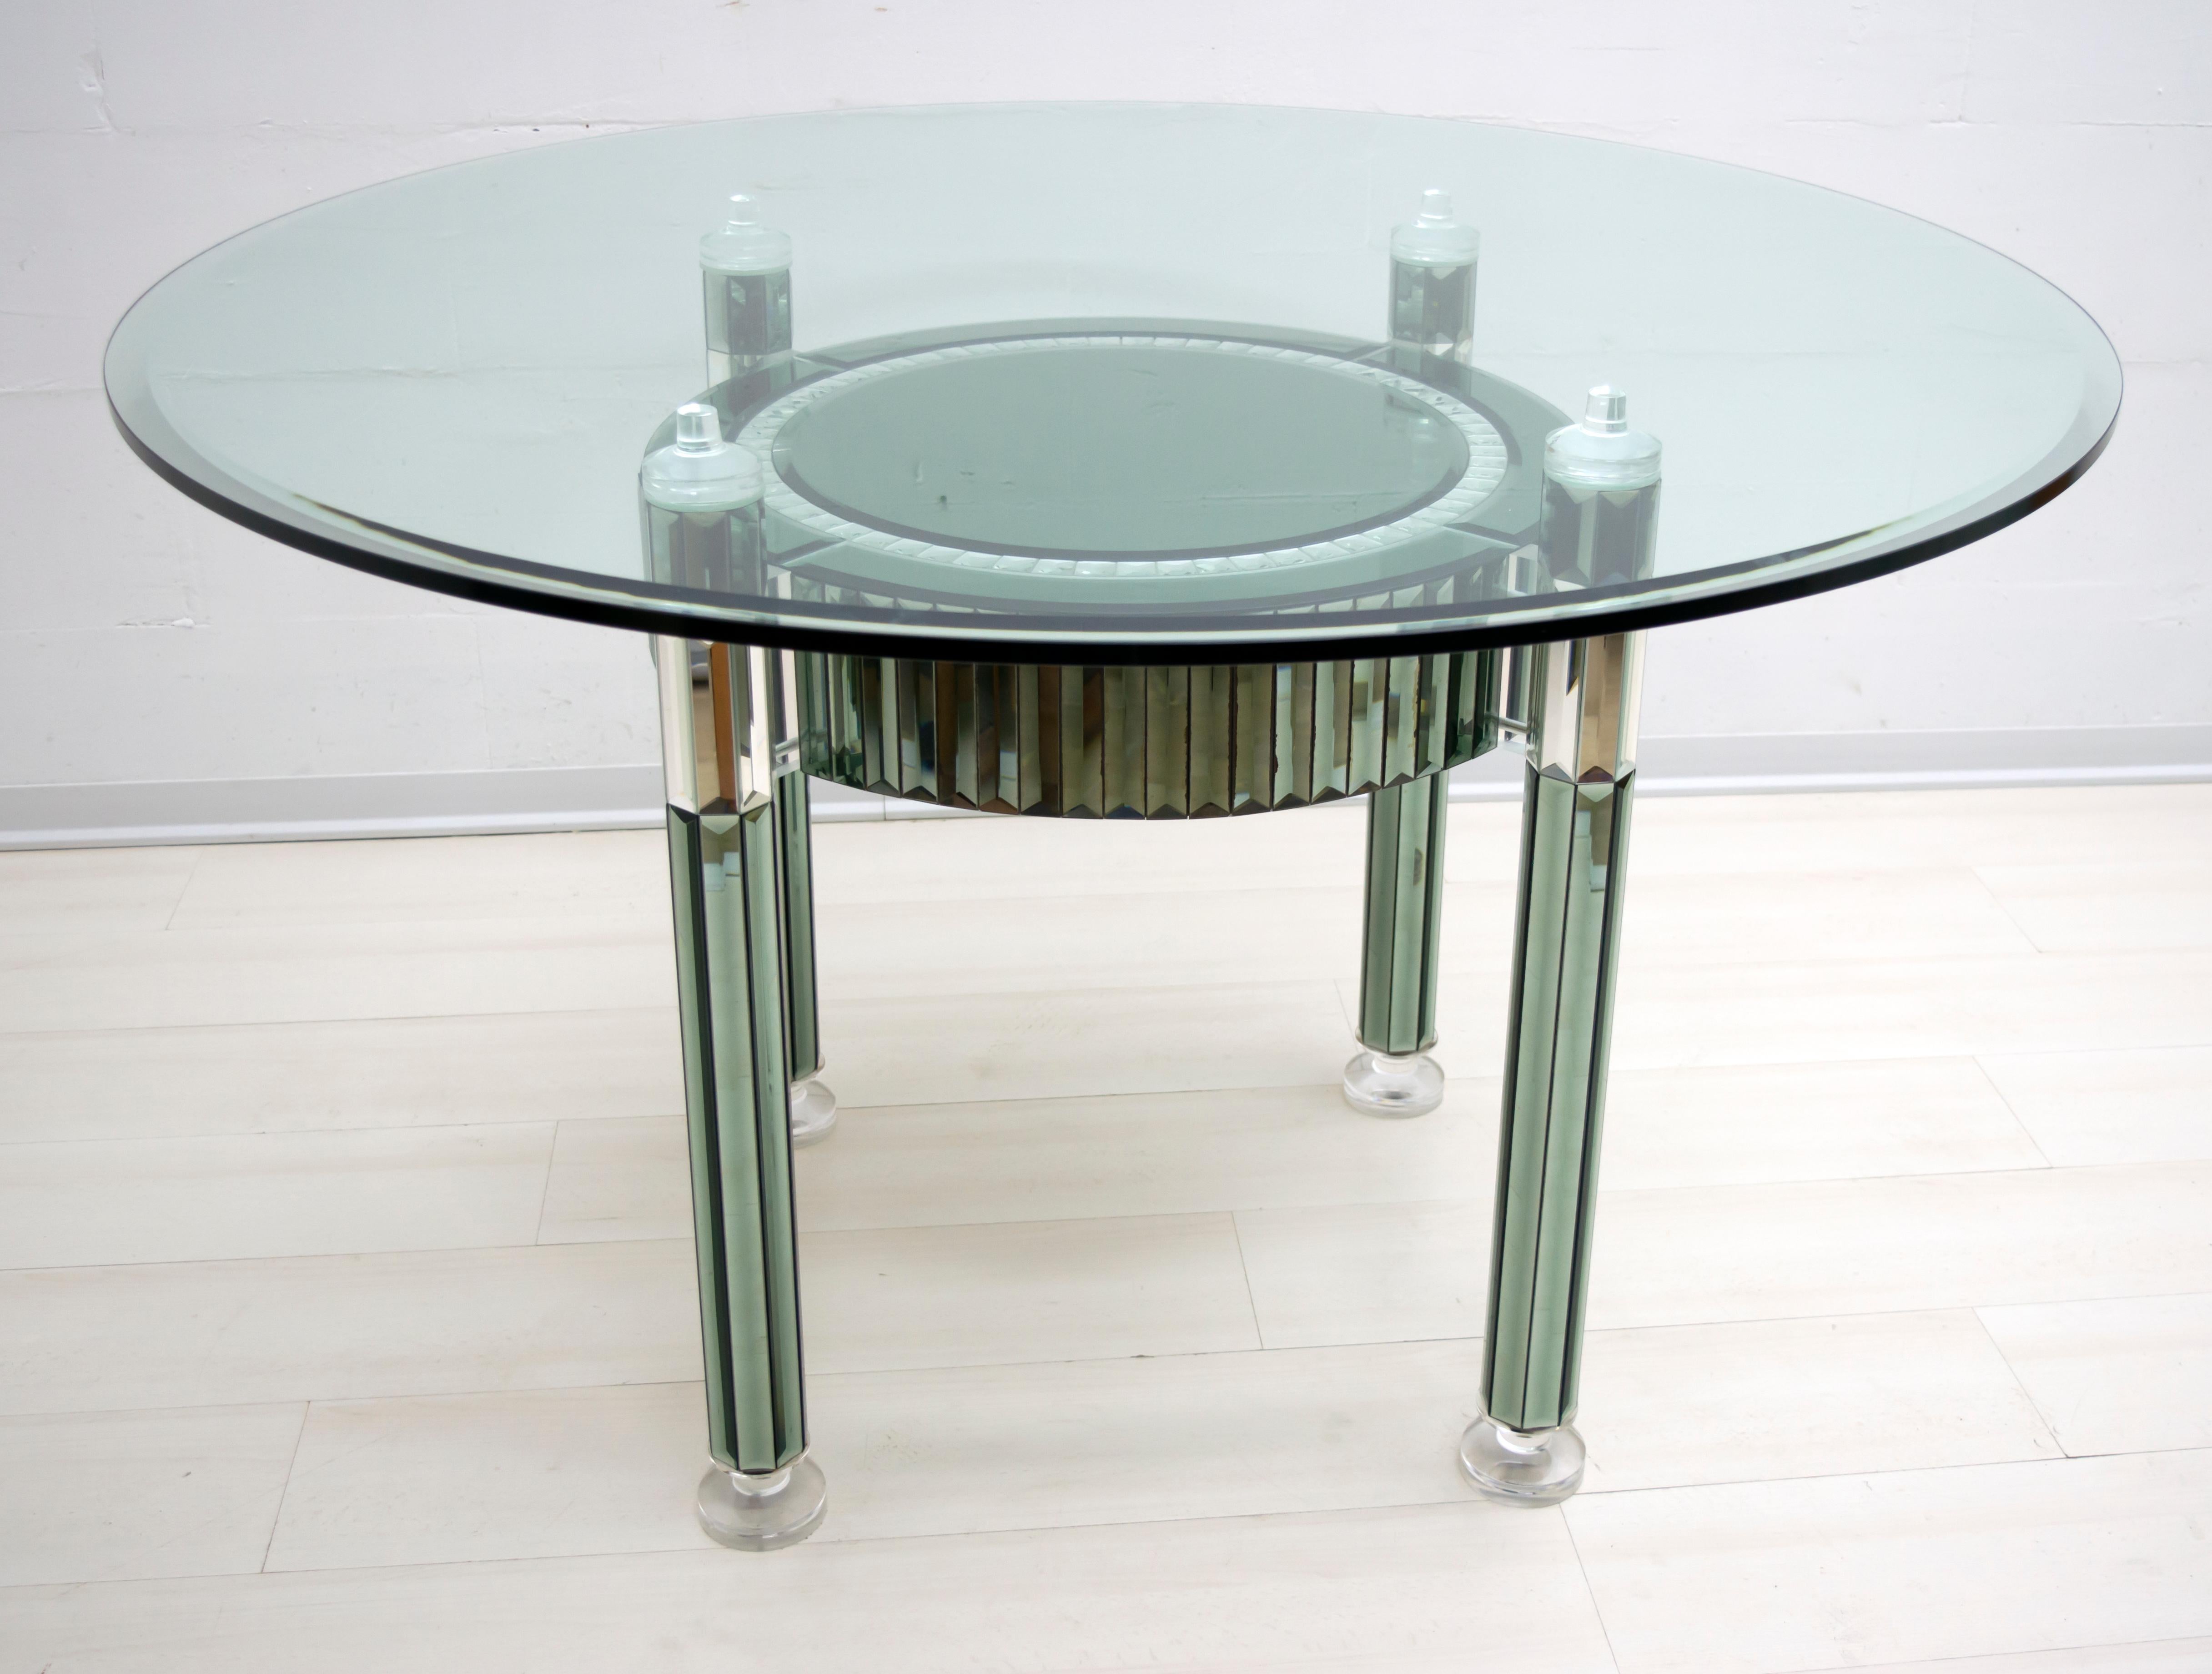 Cette table à manger a été conçue par l'architecte Zelino Poccioni pour la célèbre société italienne MP2. Le dessus est en cristal épais, la base est composée d'une mosaïque de miroirs de différentes couleurs, les pieds sont en plexiglas. Produites